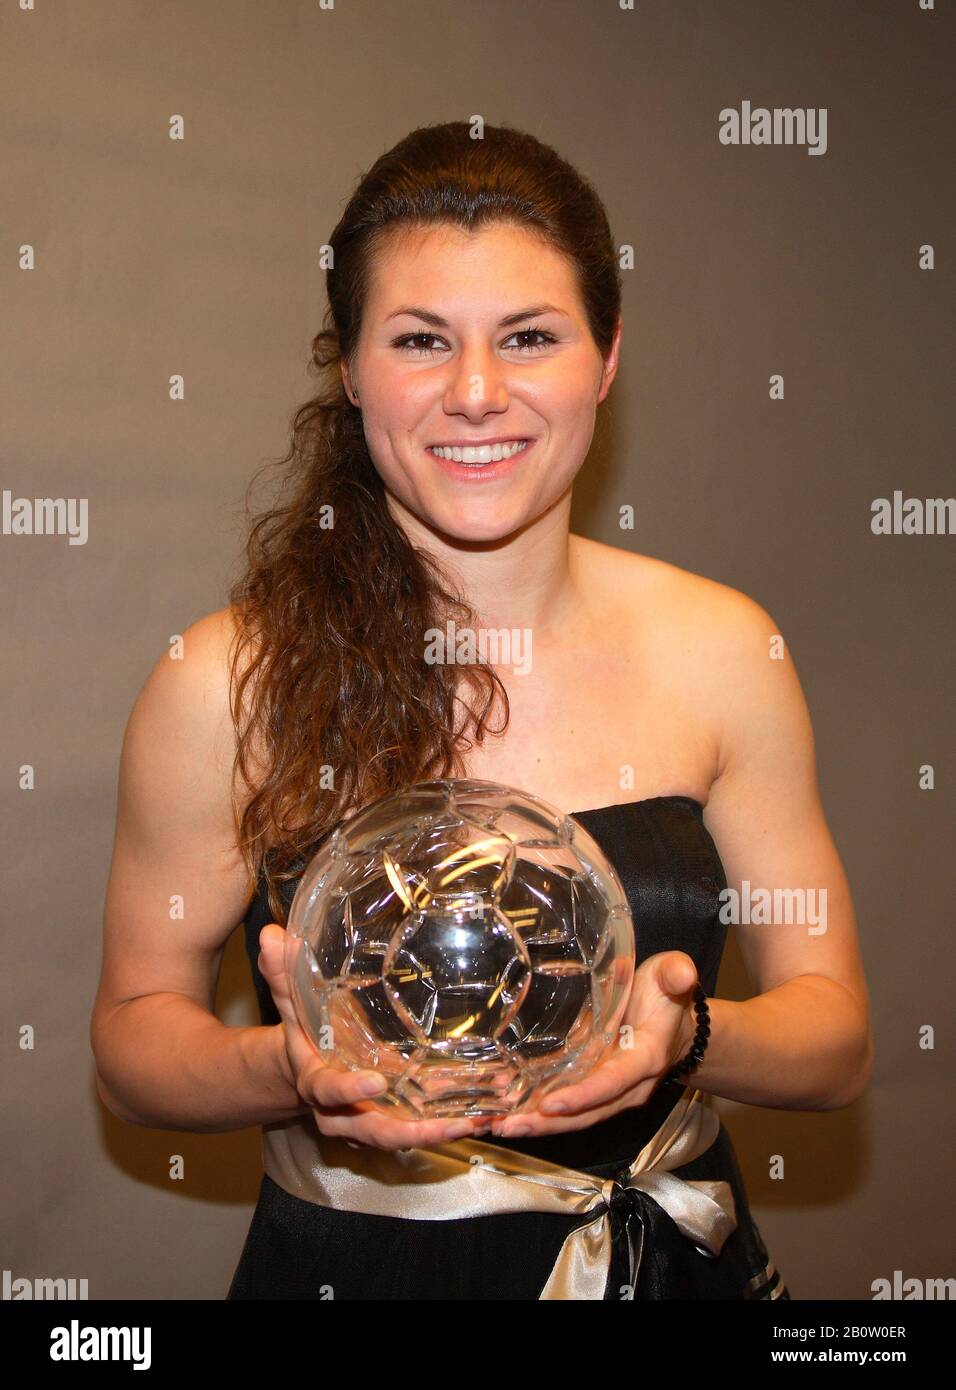 Ramona BACHMANN centrocampista svizzero nel calcio premiato alla serata svedese di gala annuale come il migliore della classifica Foto Stock